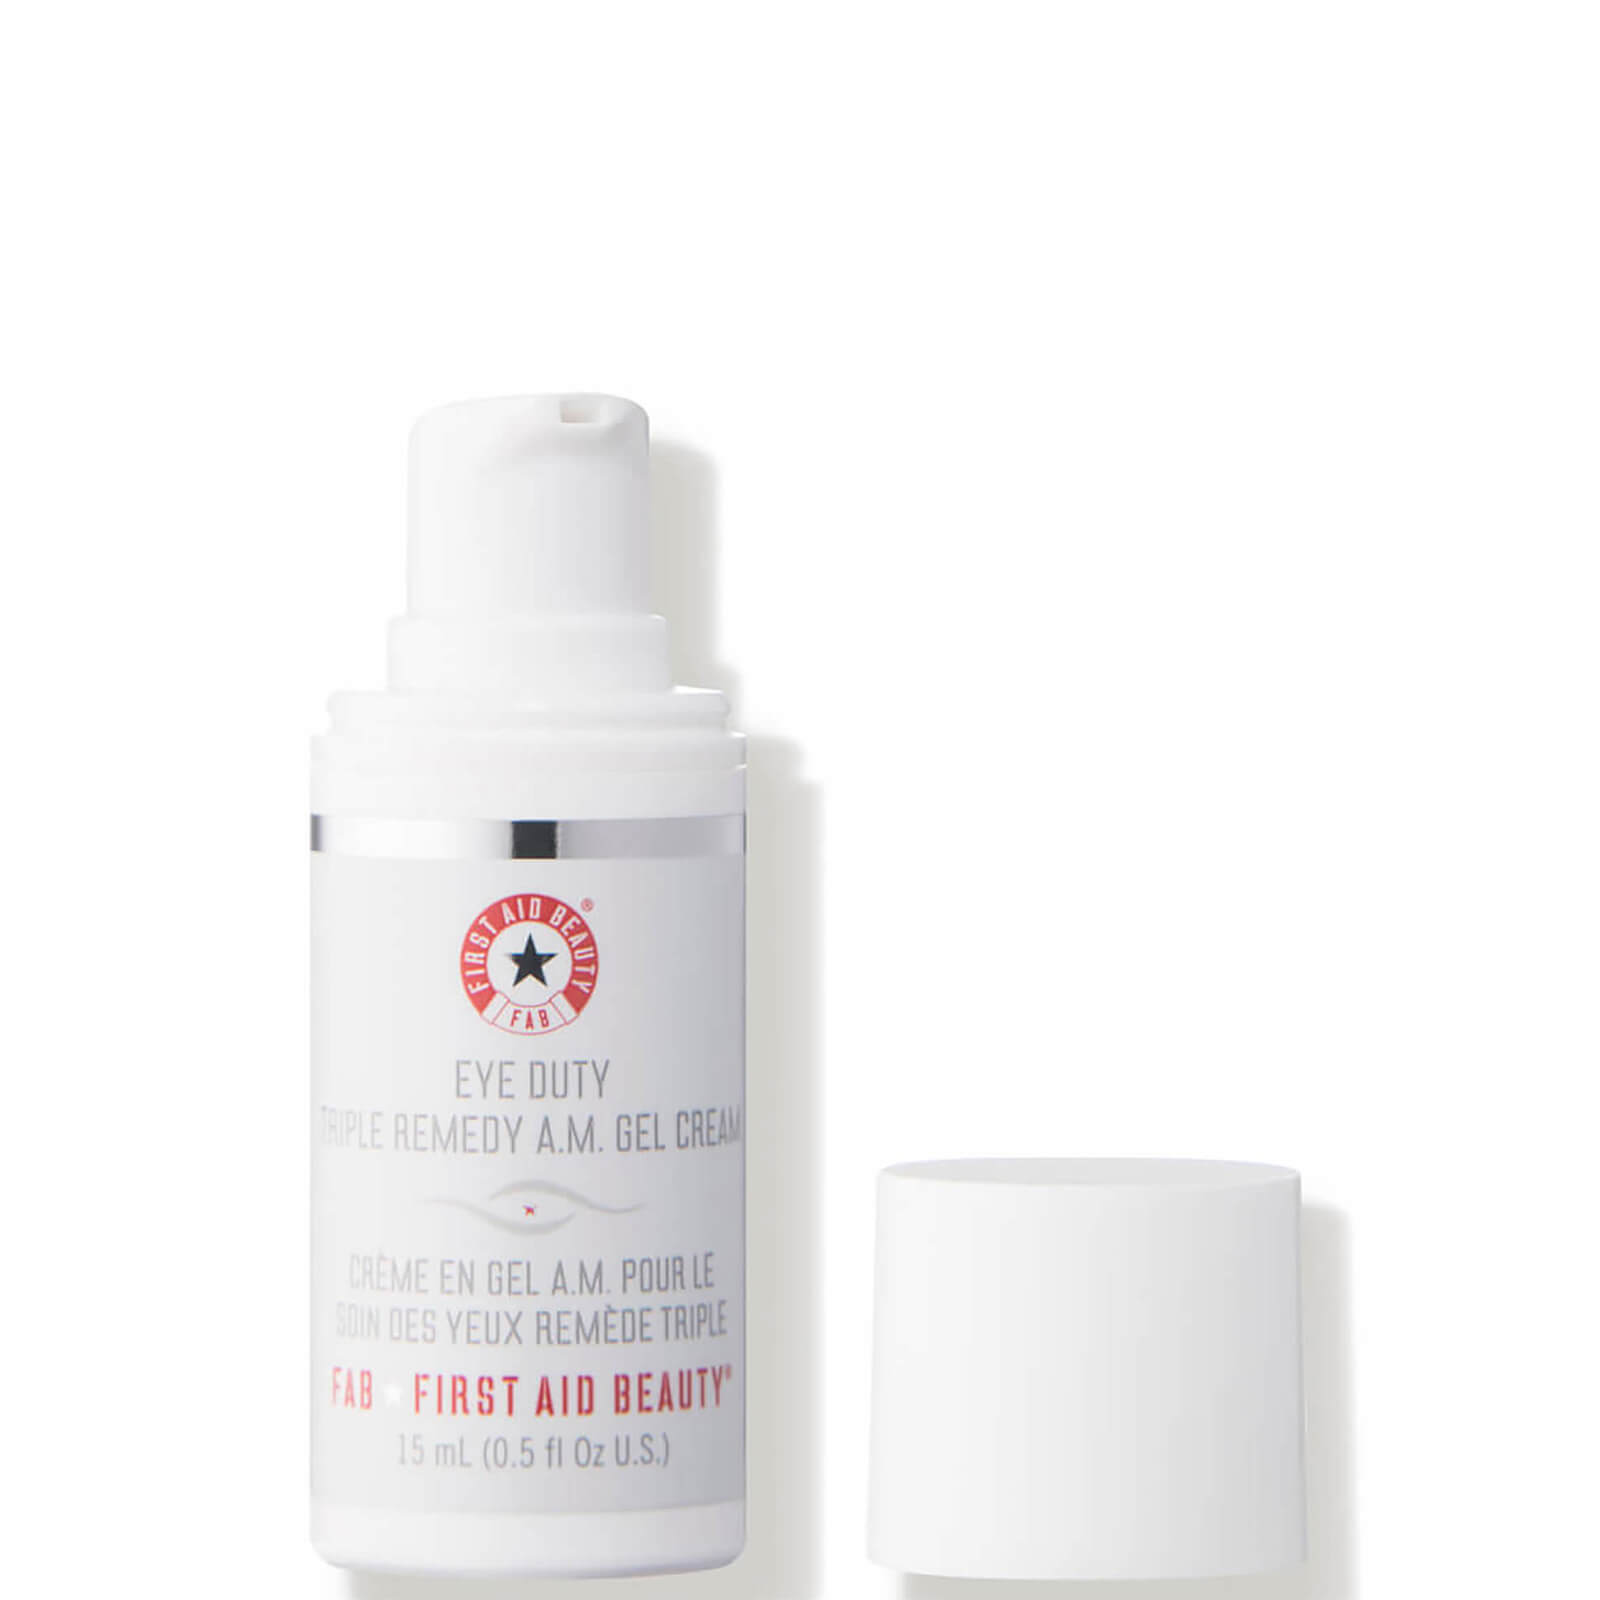 Gel-Crema Eye Duty Triple Remedy AM de First Aid Beauty (15 ml)